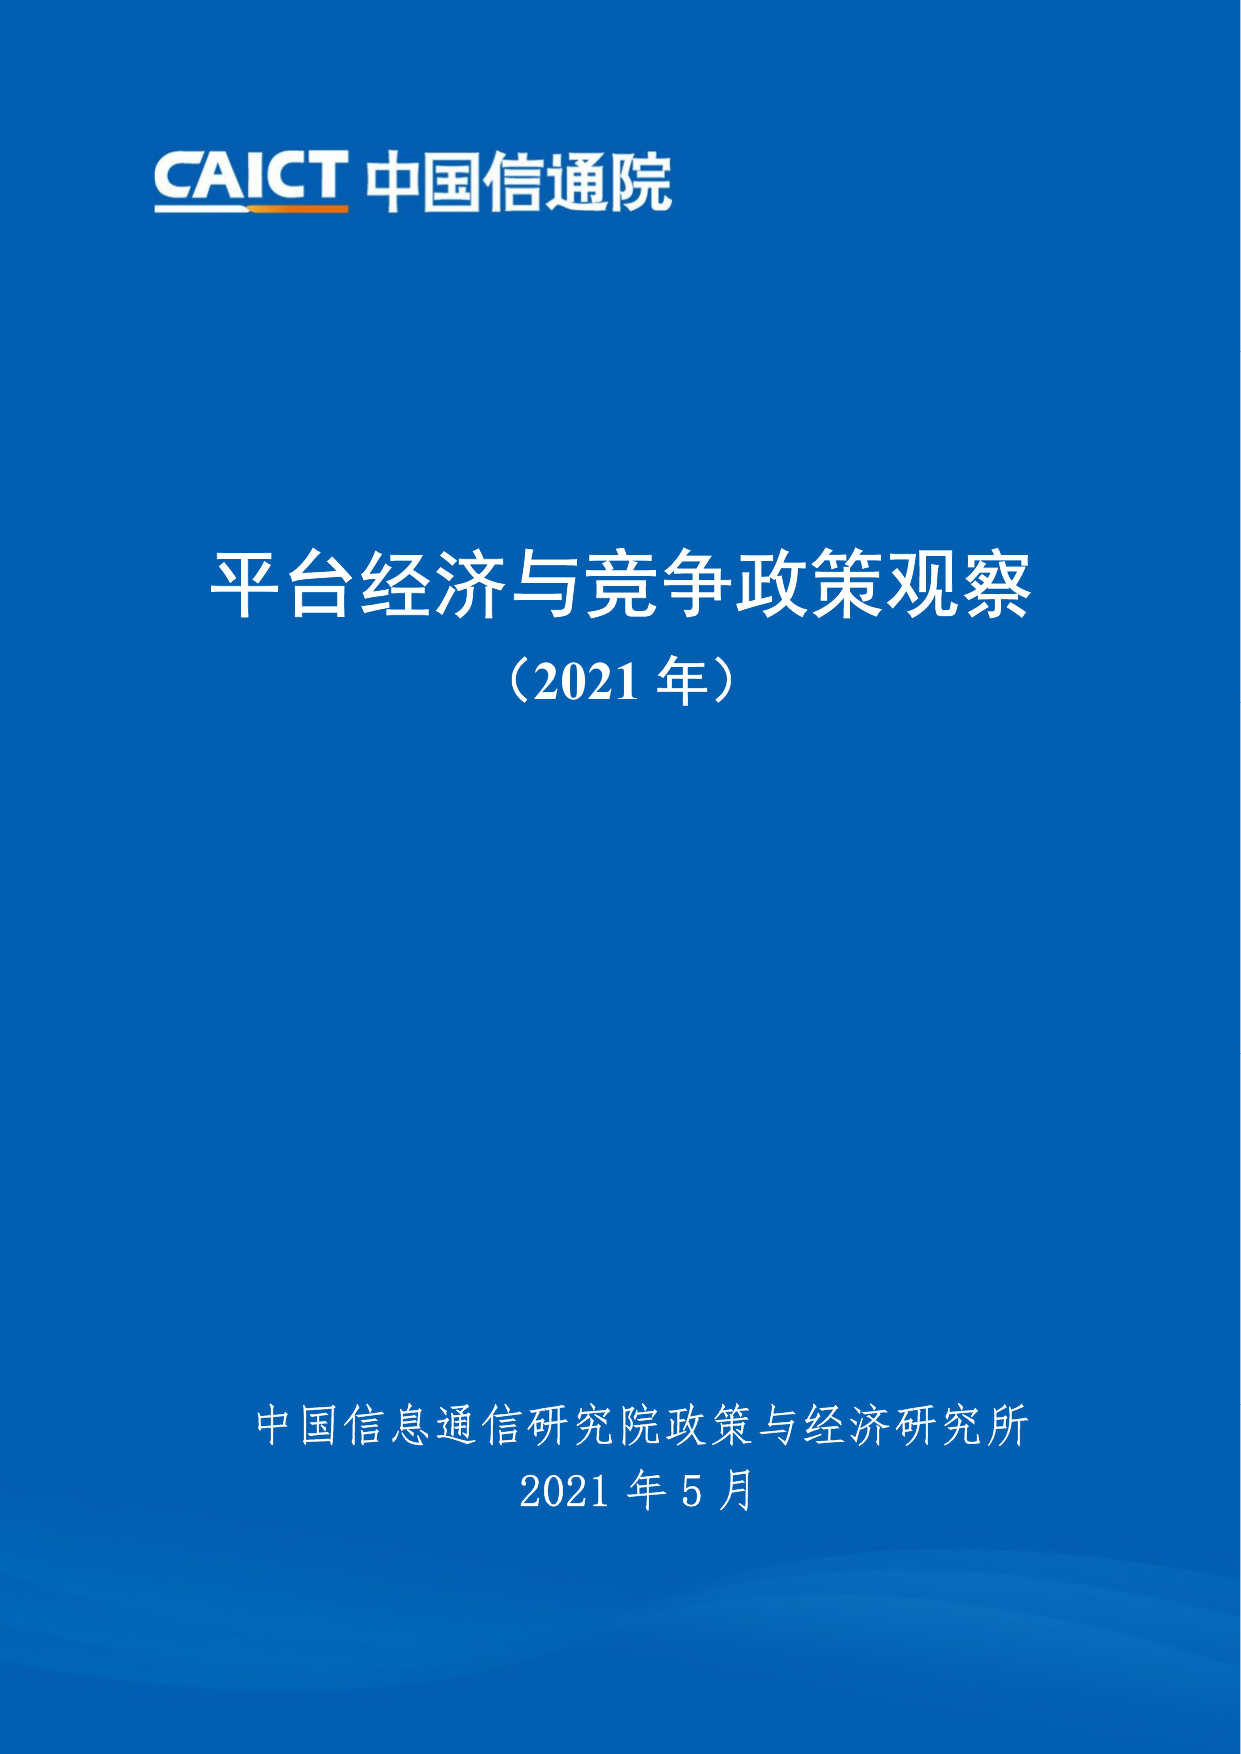 平台经济与竞争政策观察（2021）-中国信通院-2021.5-51页